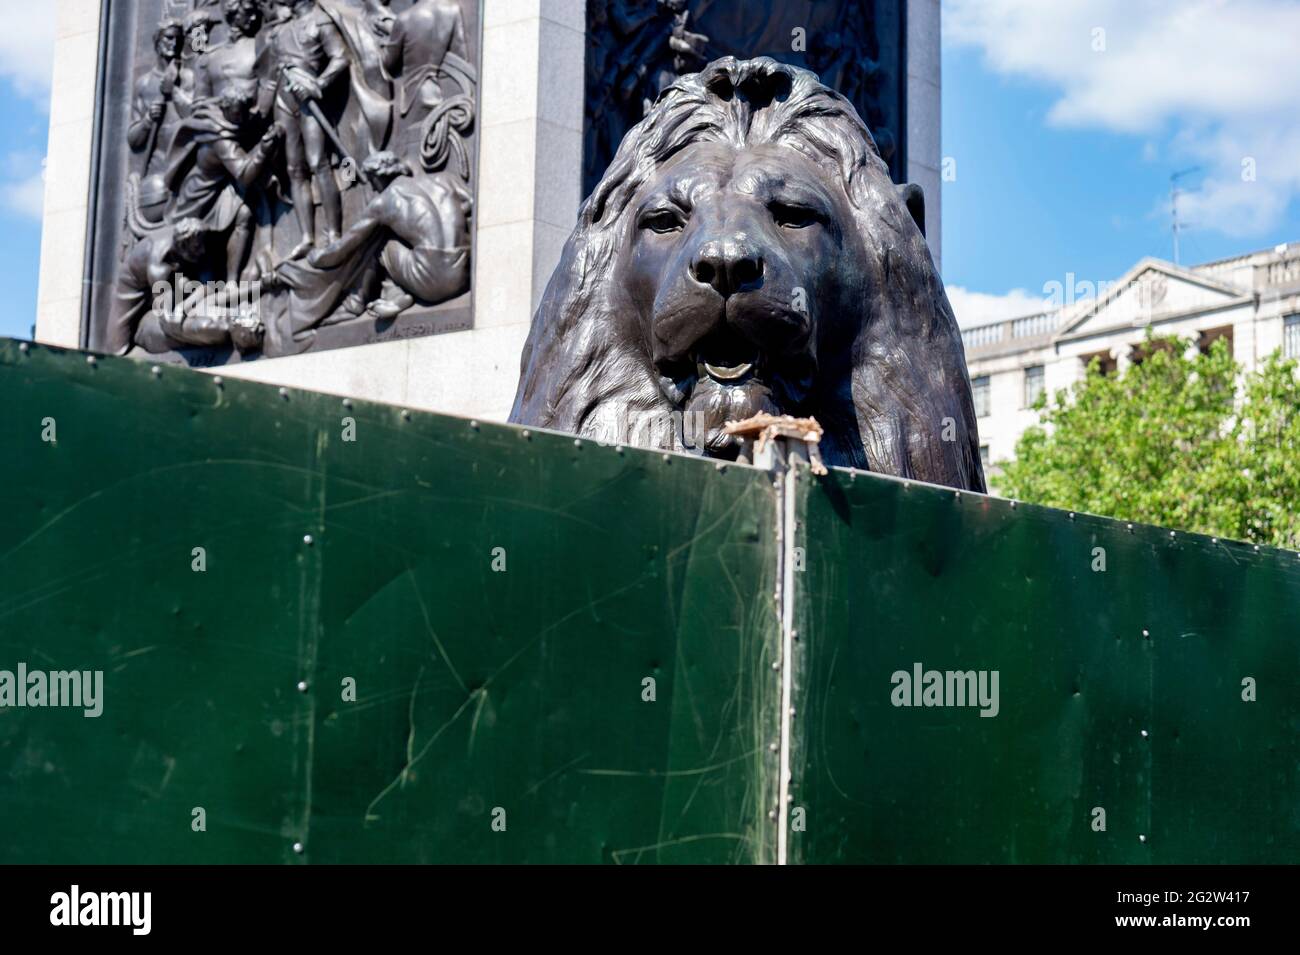 L'un des célèbres lions de Trafalgar Square surgit les barrières de la nouvelle zone des fans, avant l'inauguration de l'Angleterre dans le Championnat d'Europe de football de l'UEFA 2020 contre la Croatie. Les fans pourront regarder des matchs de l'Angleterre sur un écran géant sur la place. Banque D'Images